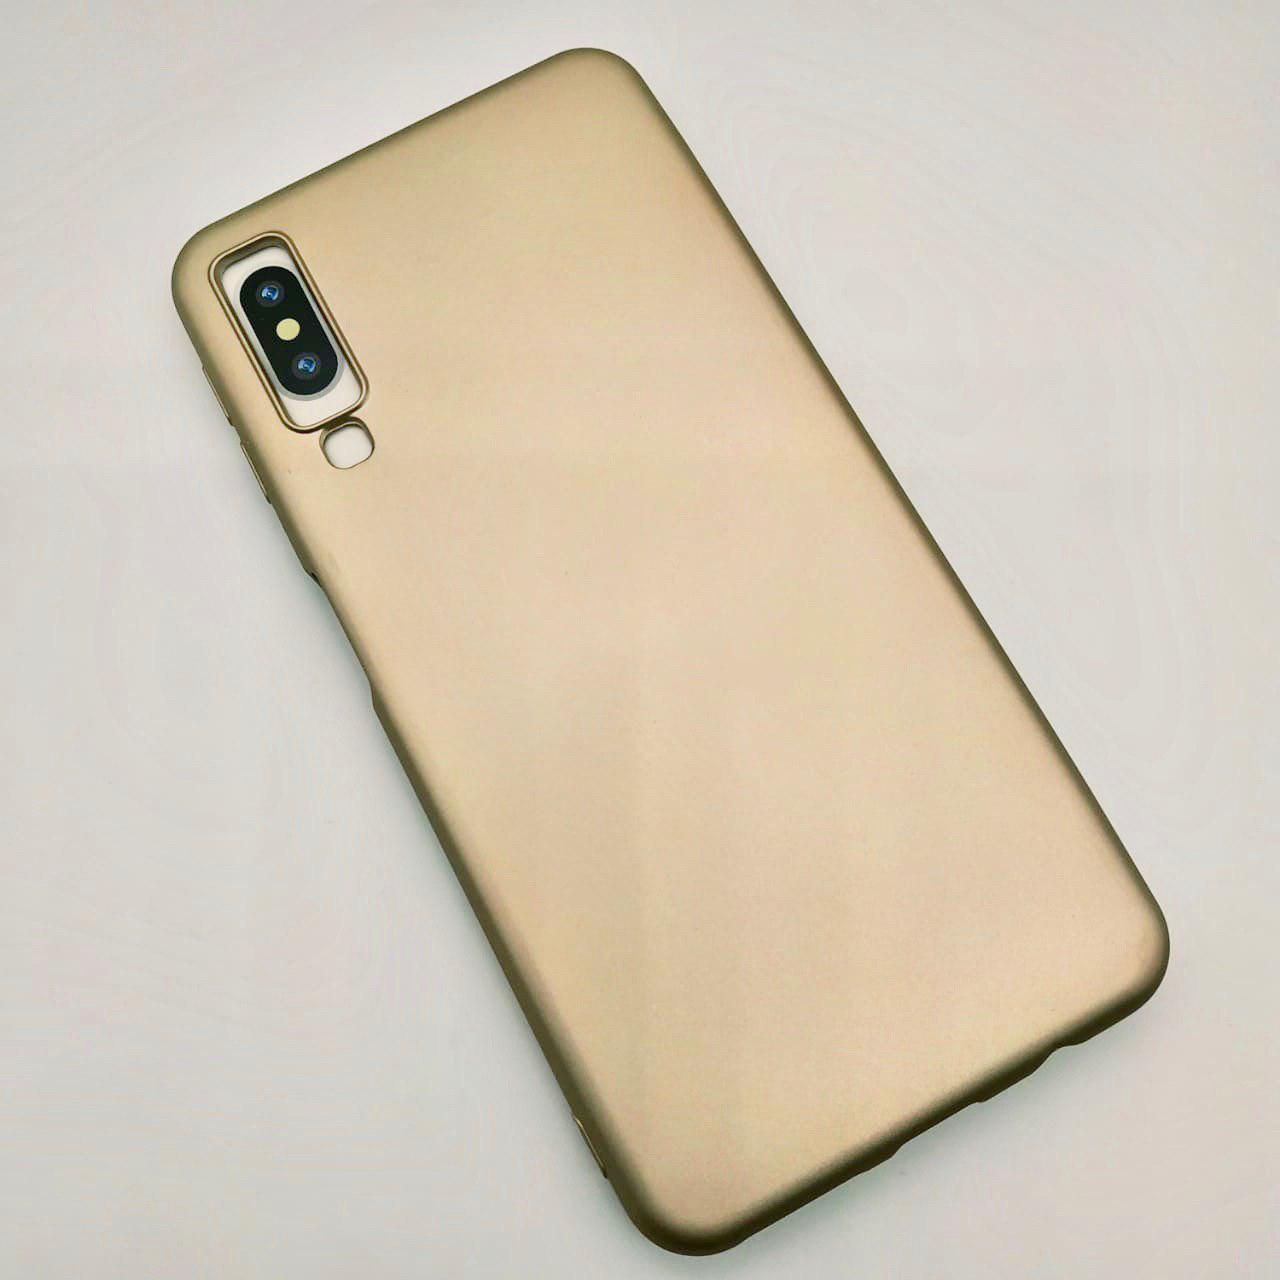 Накладка для SAMSUNG Galaxy A7 2018 (SM-A750) силиконовая J-Case THIN, цвет золотистый.